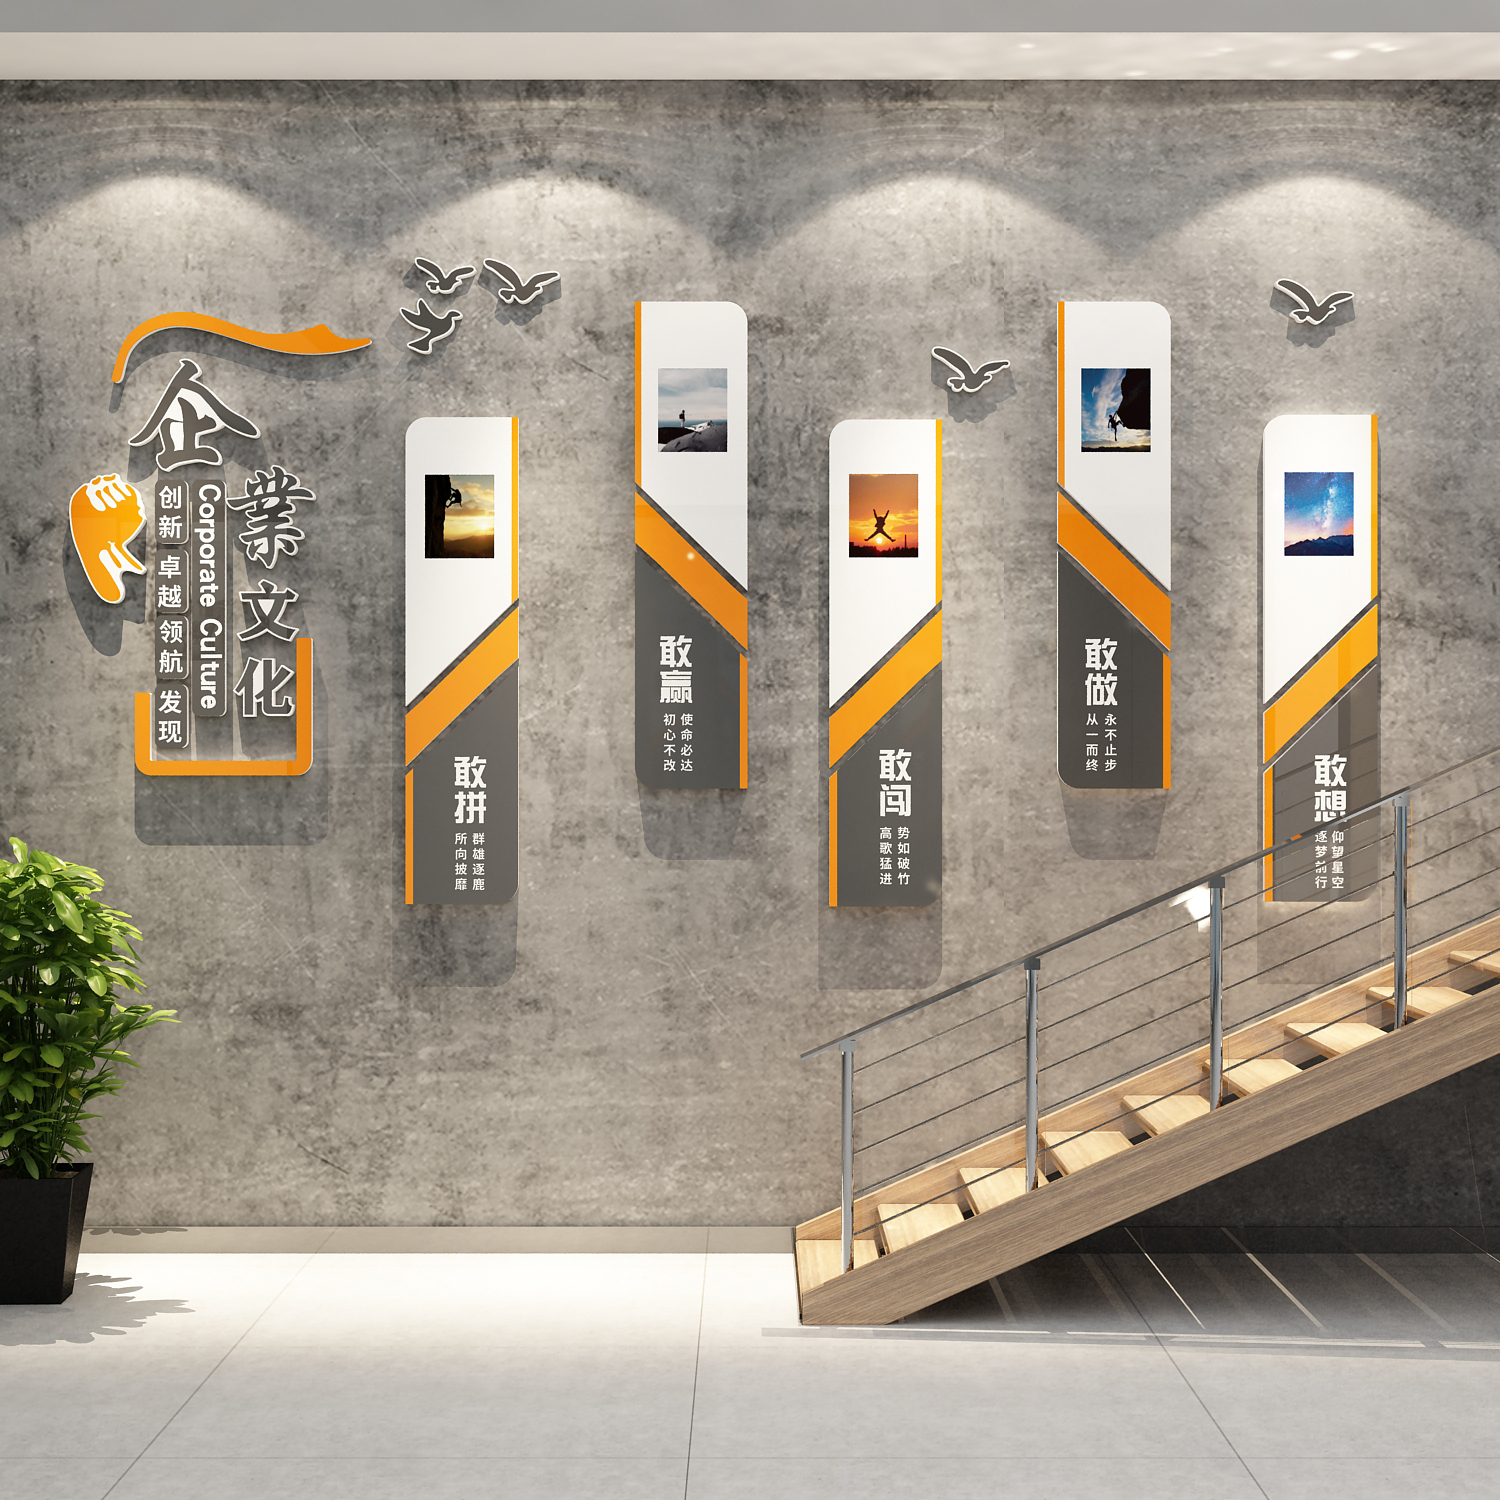 办公室墙面装饰激励标语贴企业文化公司形象背景楼梯台阶扶手布置